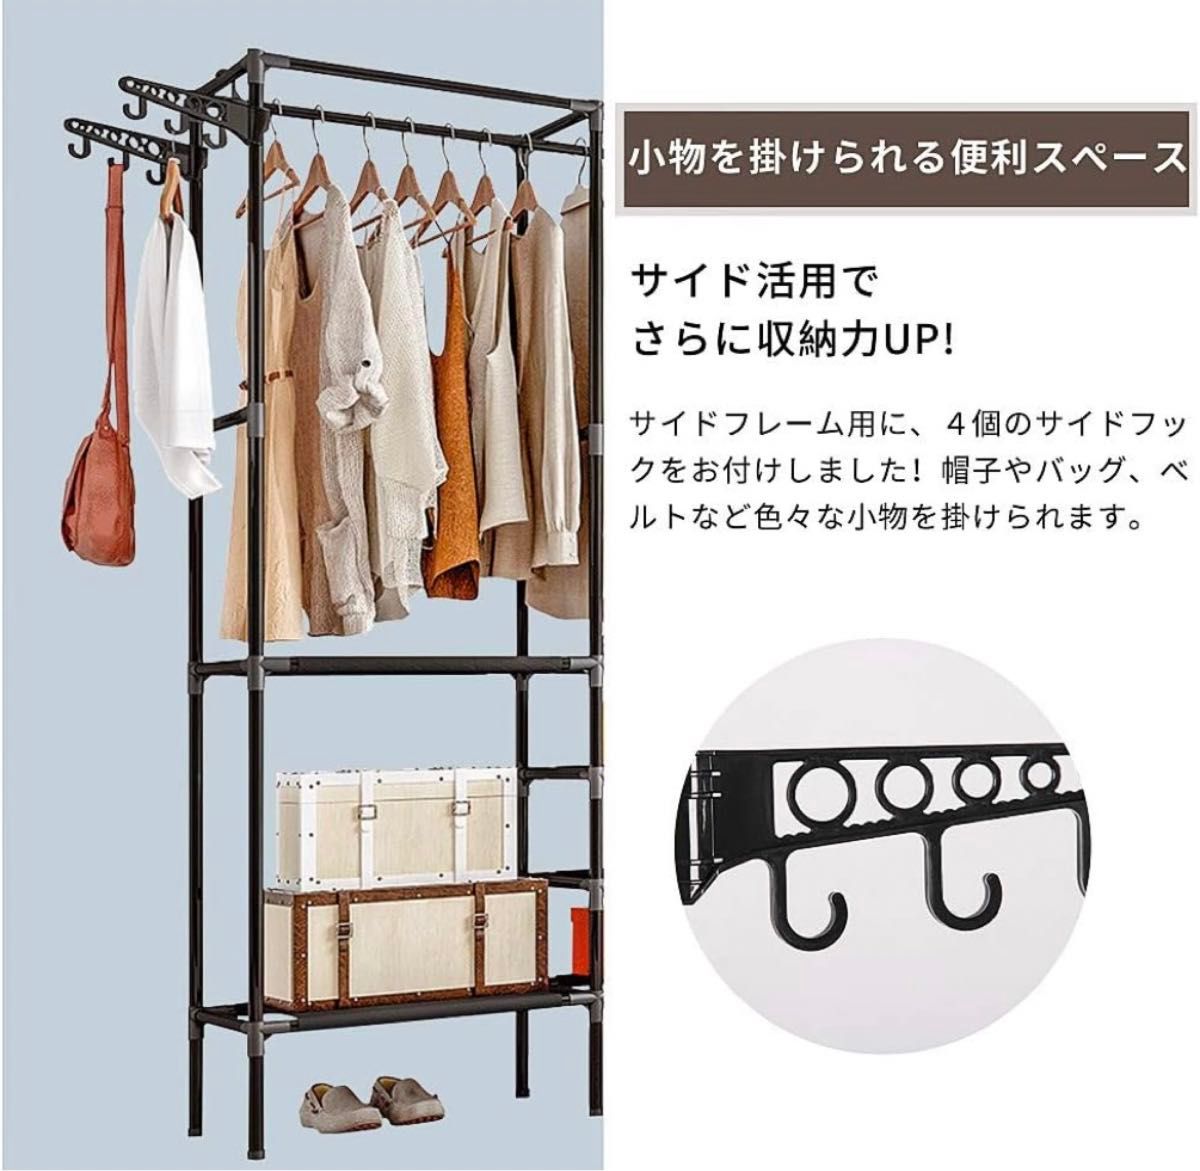 【新品】 ハンガーラック ブラック 衣類収納 コートハンガー 収納 大容量 パイプハンガー 組立式